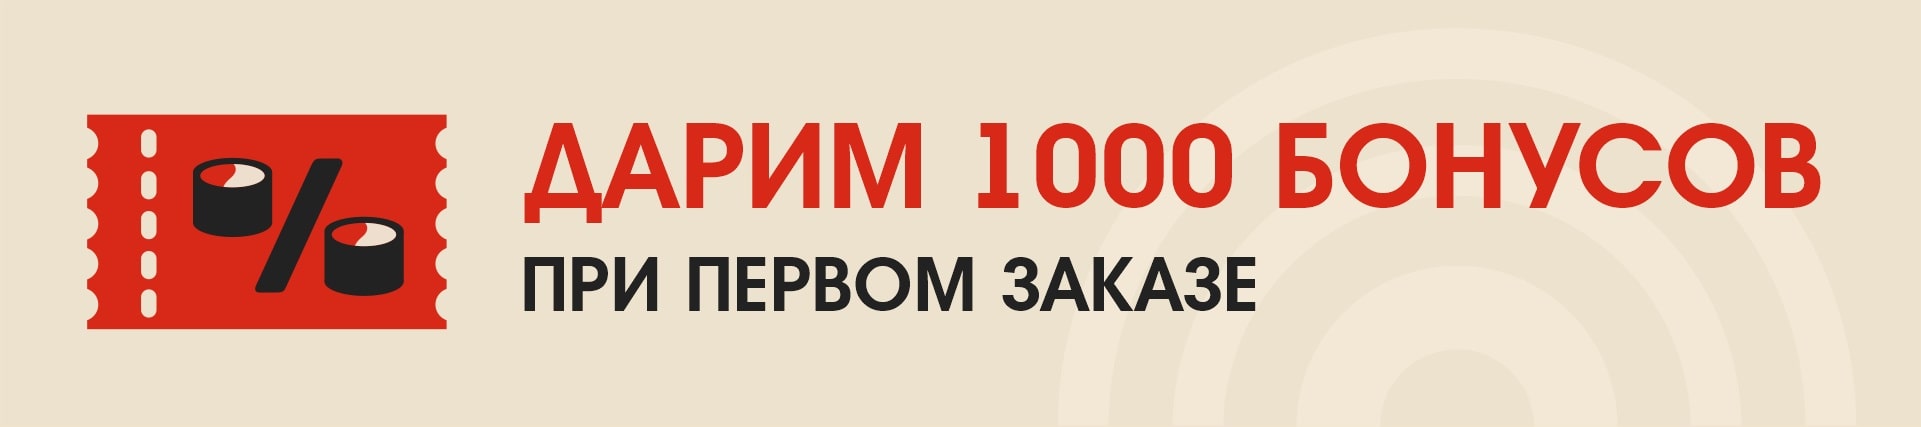 1000 в подарок БРН